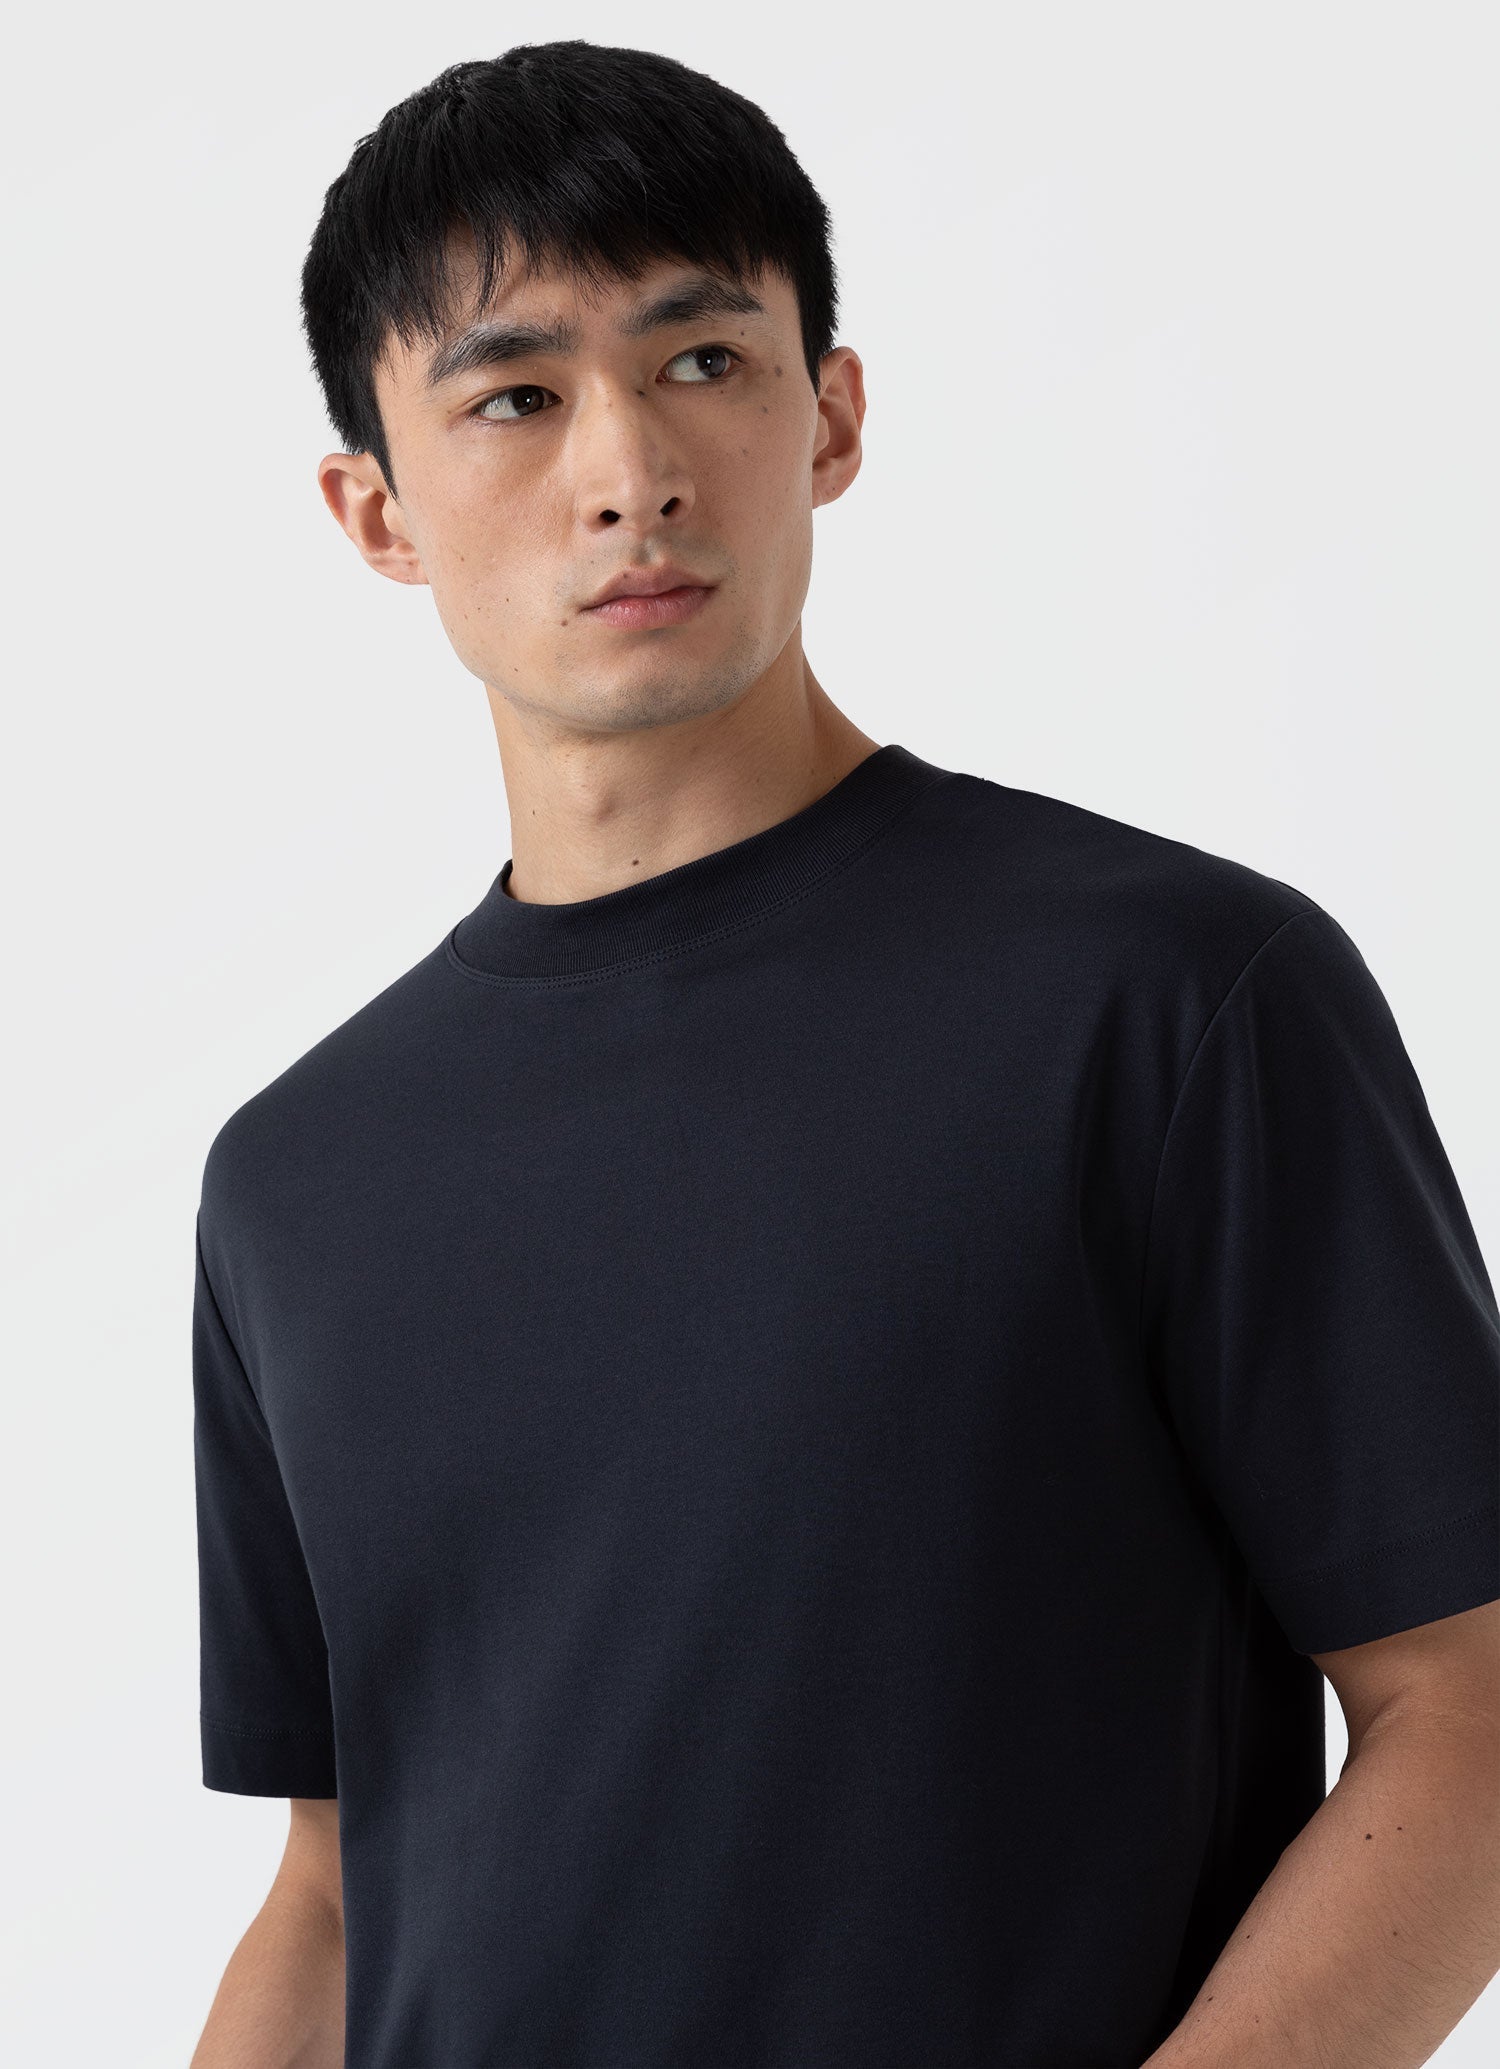 Men's Mock Neck Heavyweight T-shirt in Black | Sunspel